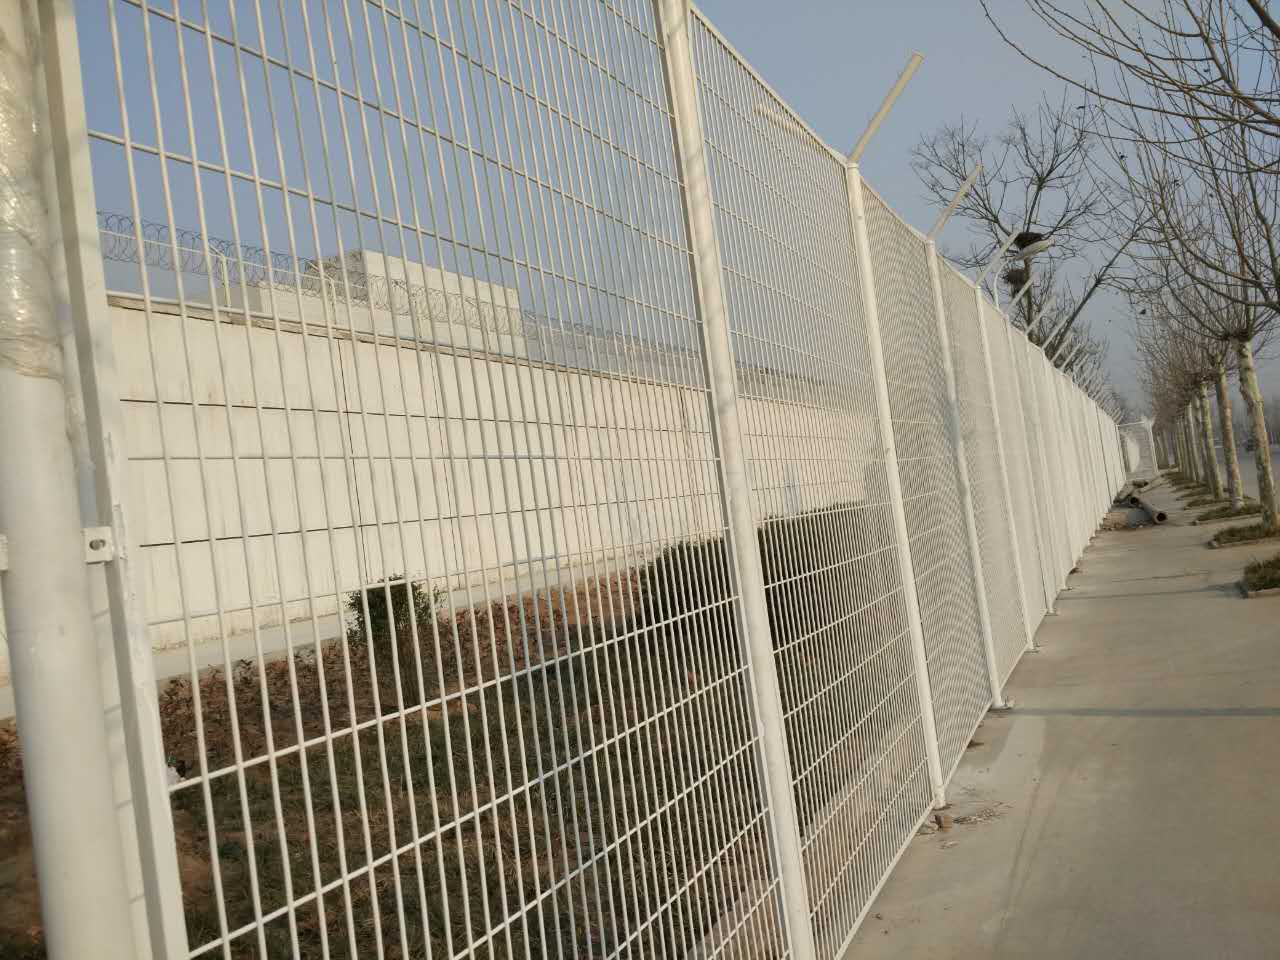 梅花刺监狱钢网墙 监狱围栏网